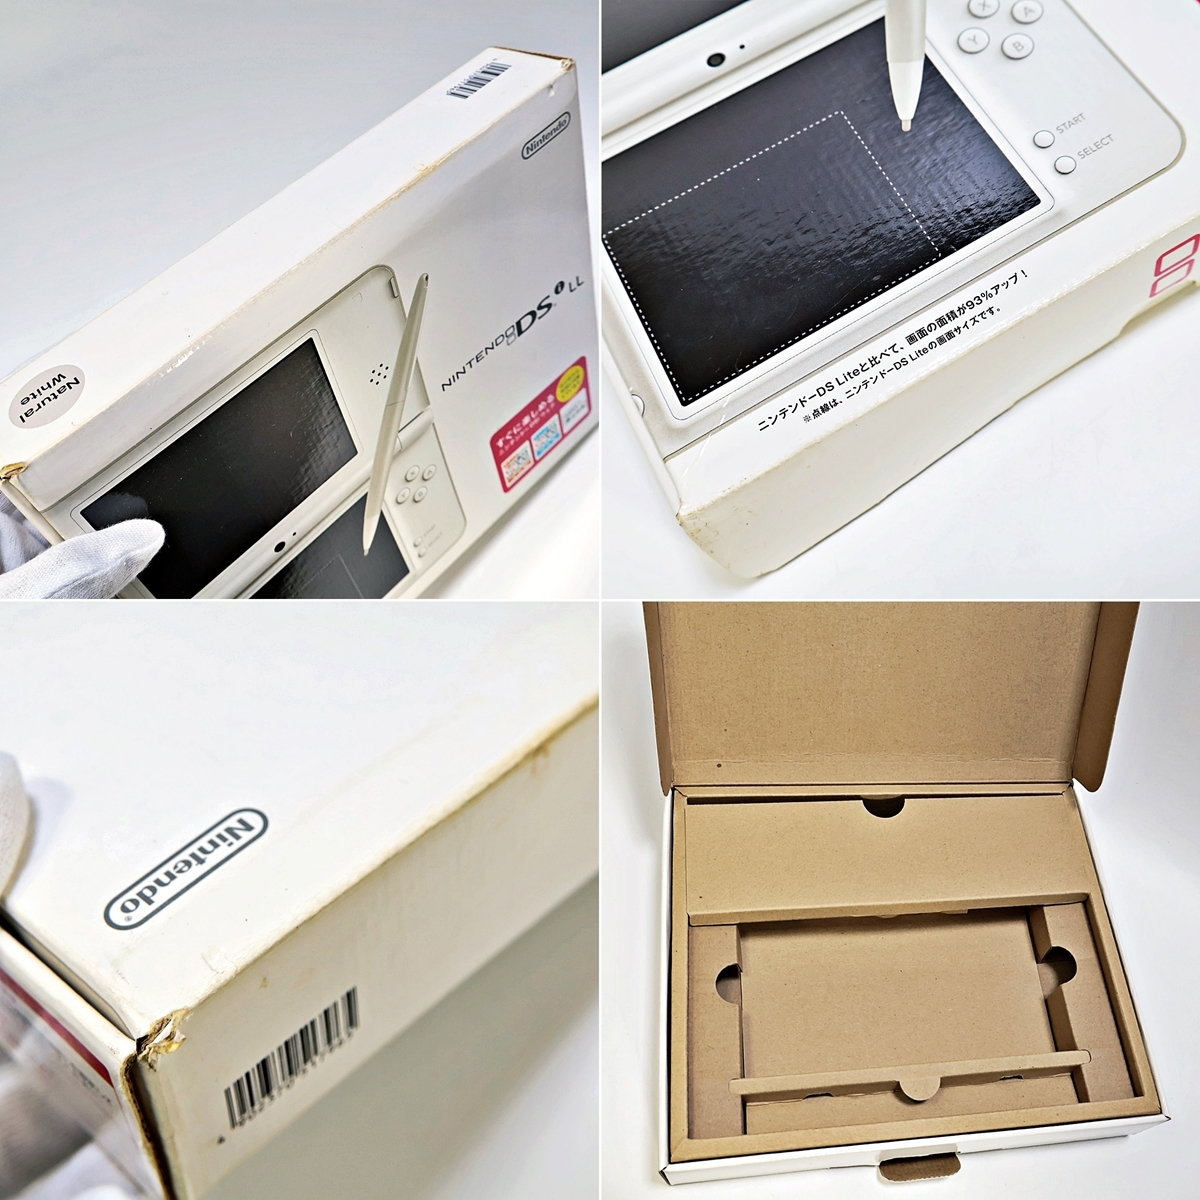 Nintendo DS i LL UTL-001 任天堂 ニンテンドー ナチュラルホワイト ゲーム機 本体 取扱説明書 箱付き 003FEZFI03_画像10